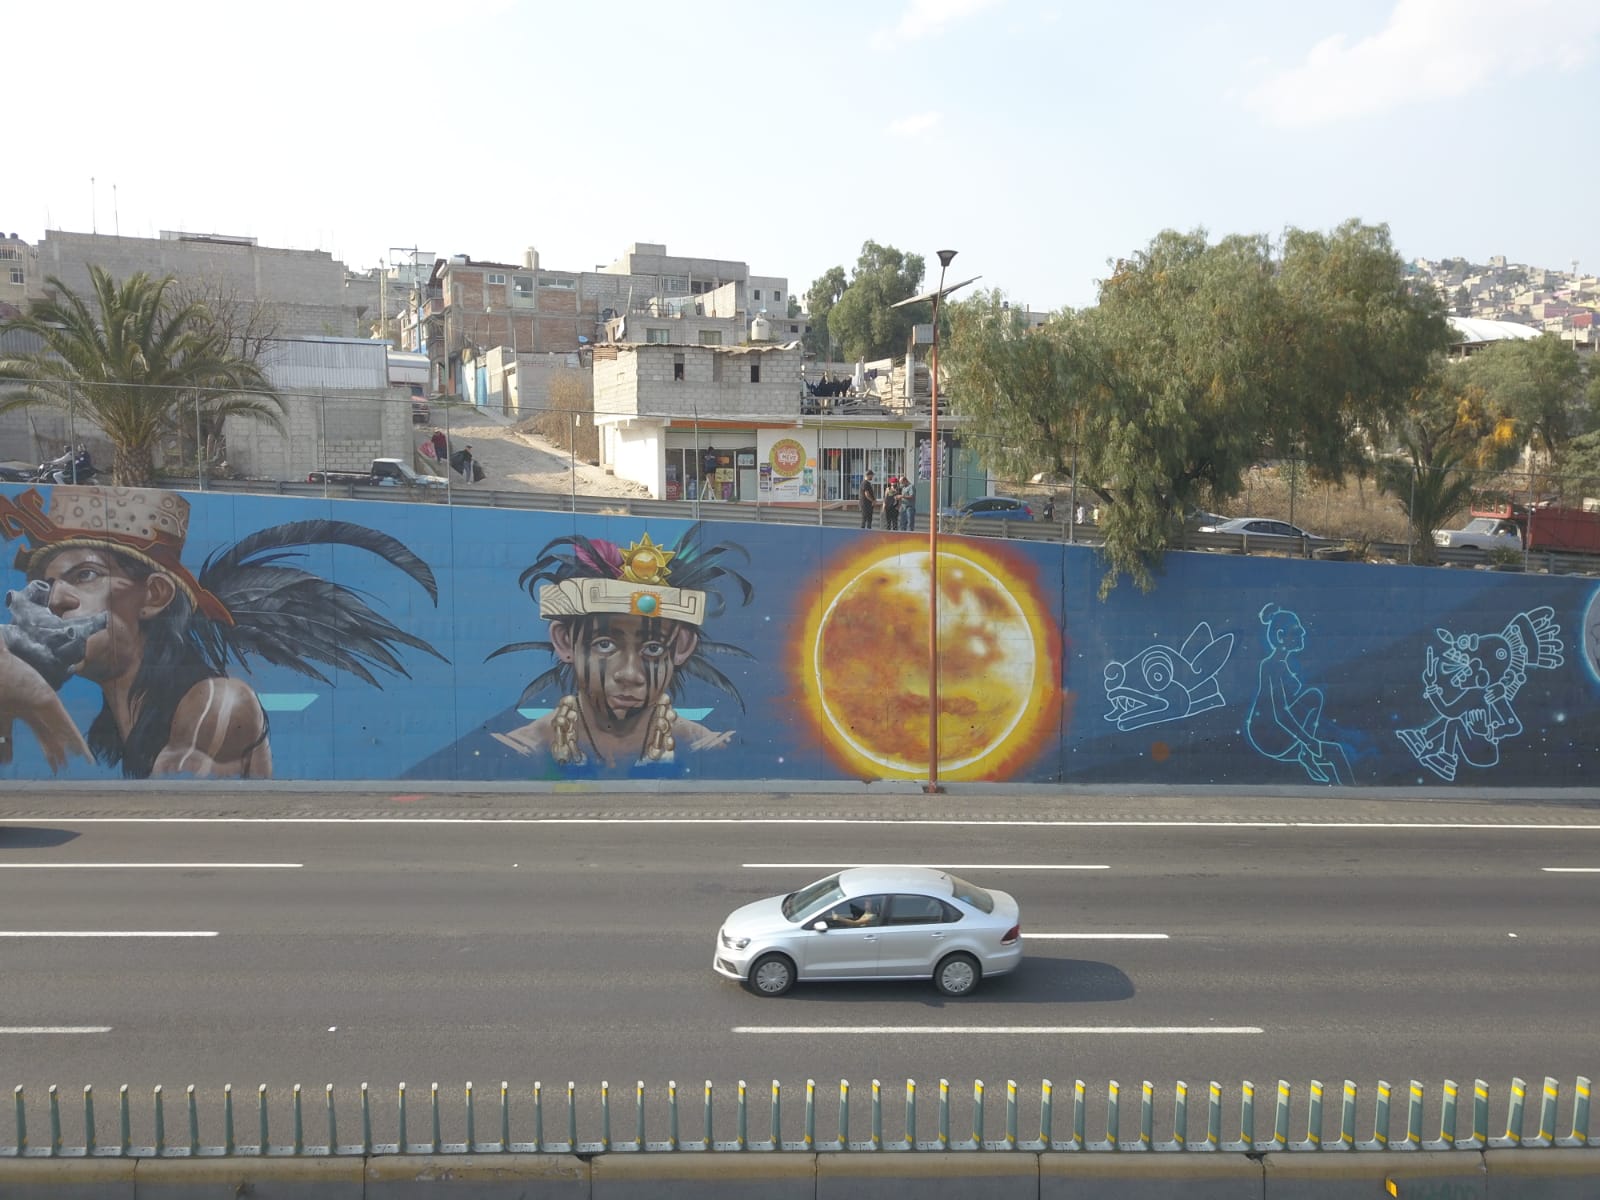 arte urbano en Ecatepec